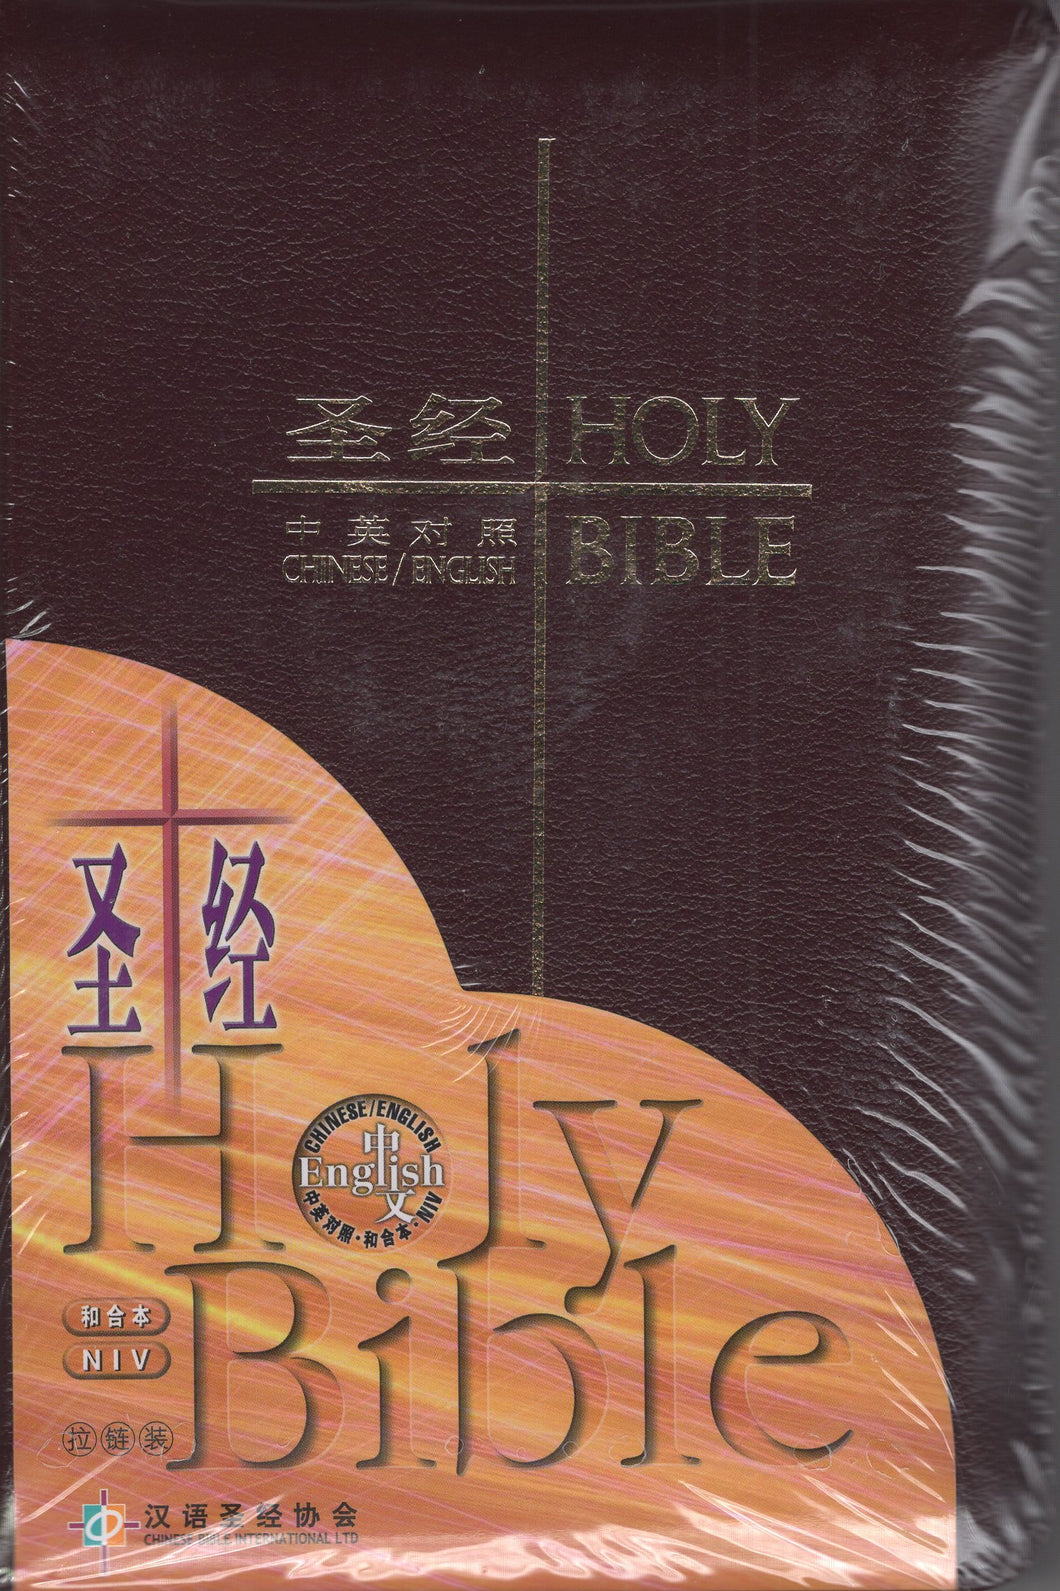 中英皮面中型拉鍊聖經(簡/和合/NIV) #01A-027B